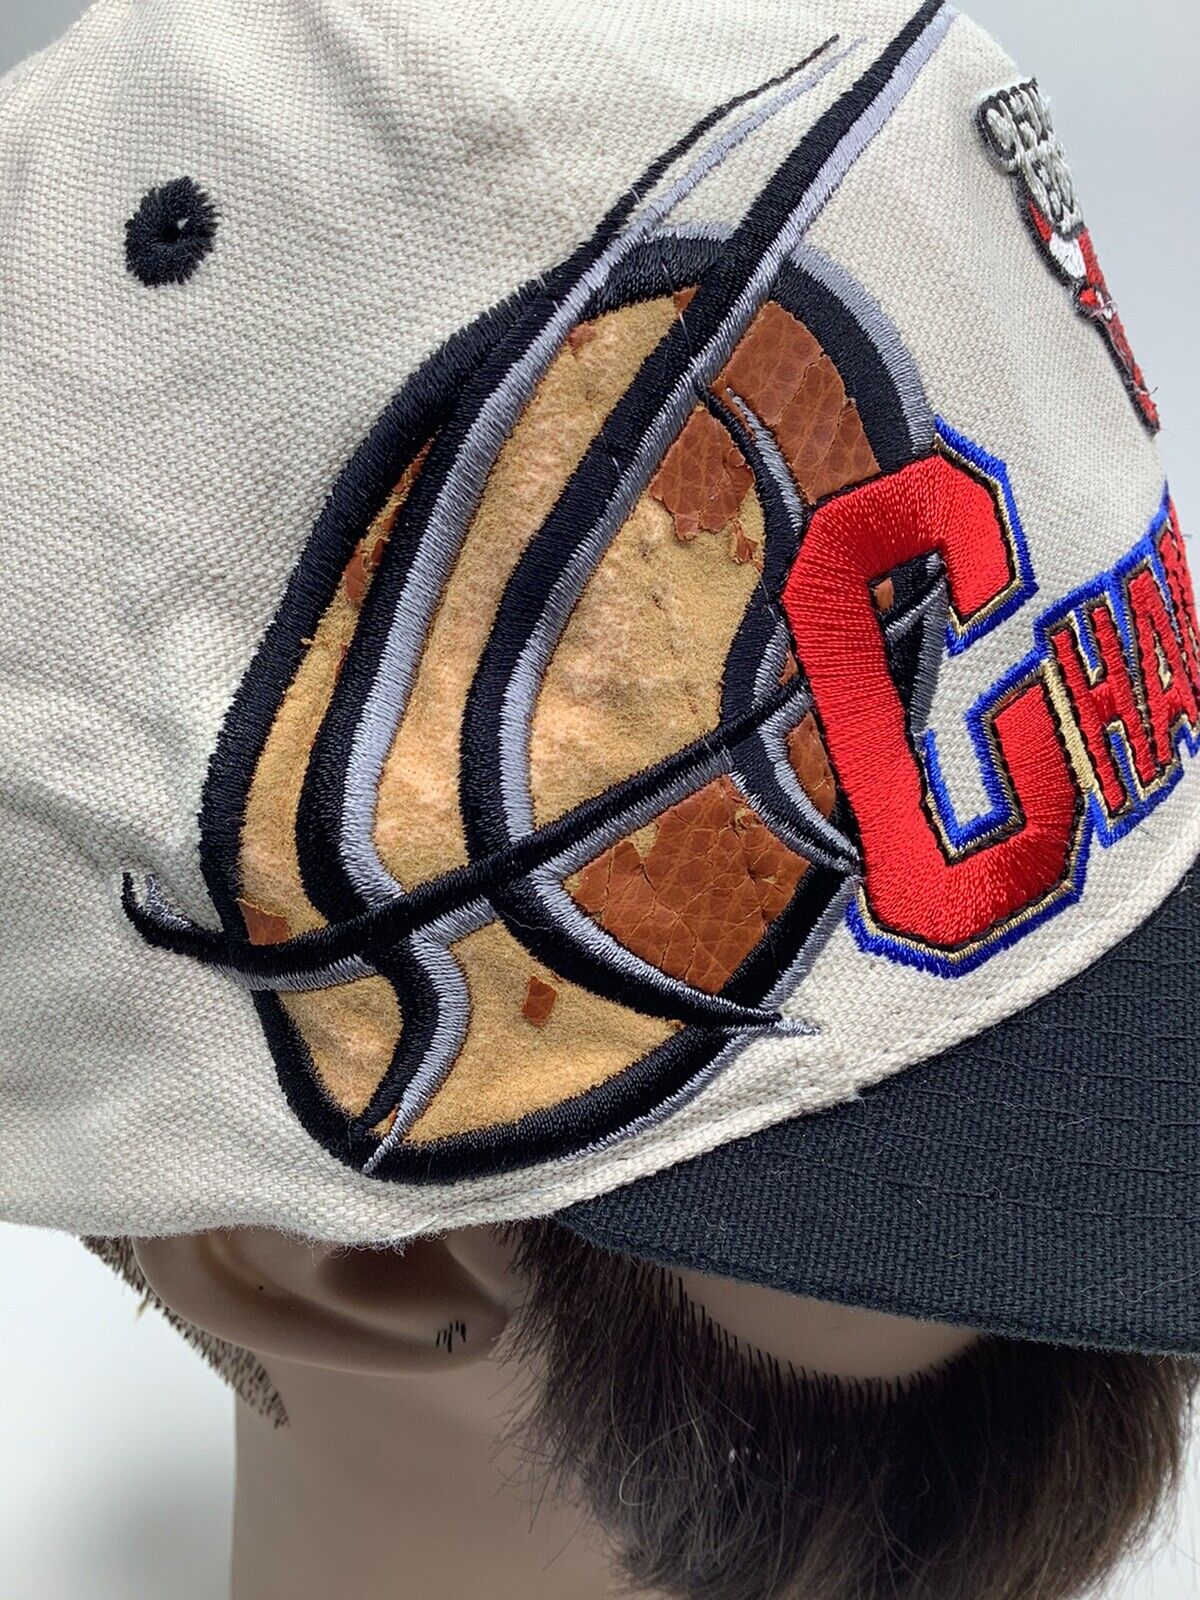 ✅Chicago Bulls 1996 Championship Snapback Hat Locker Room Cap Logo Athletic